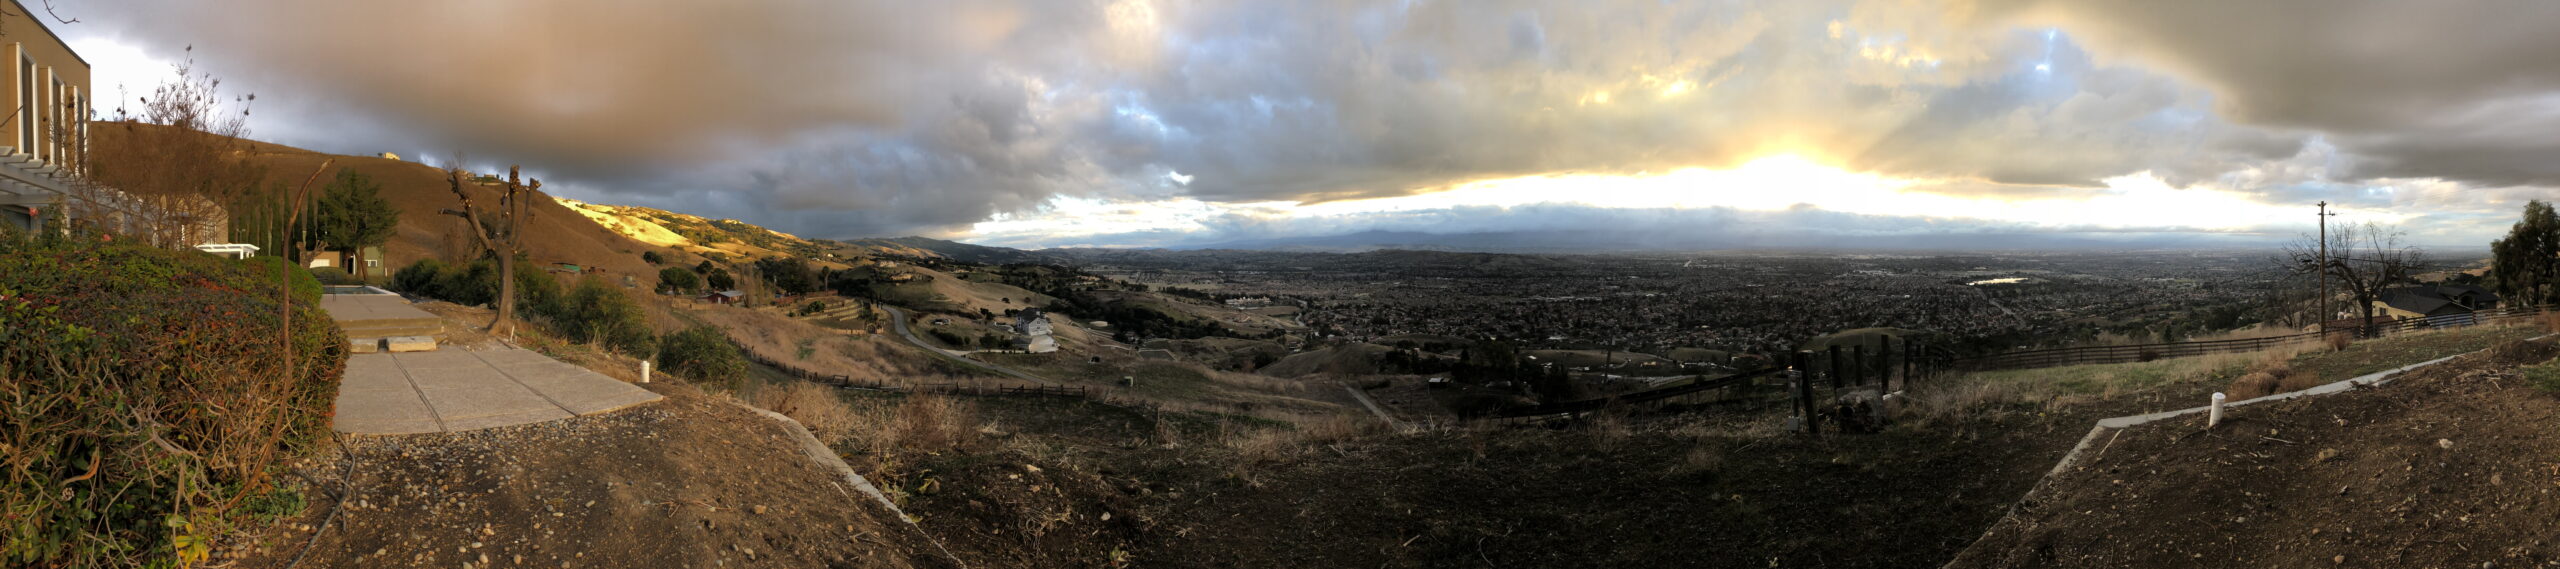 Panorama January 4, 2019